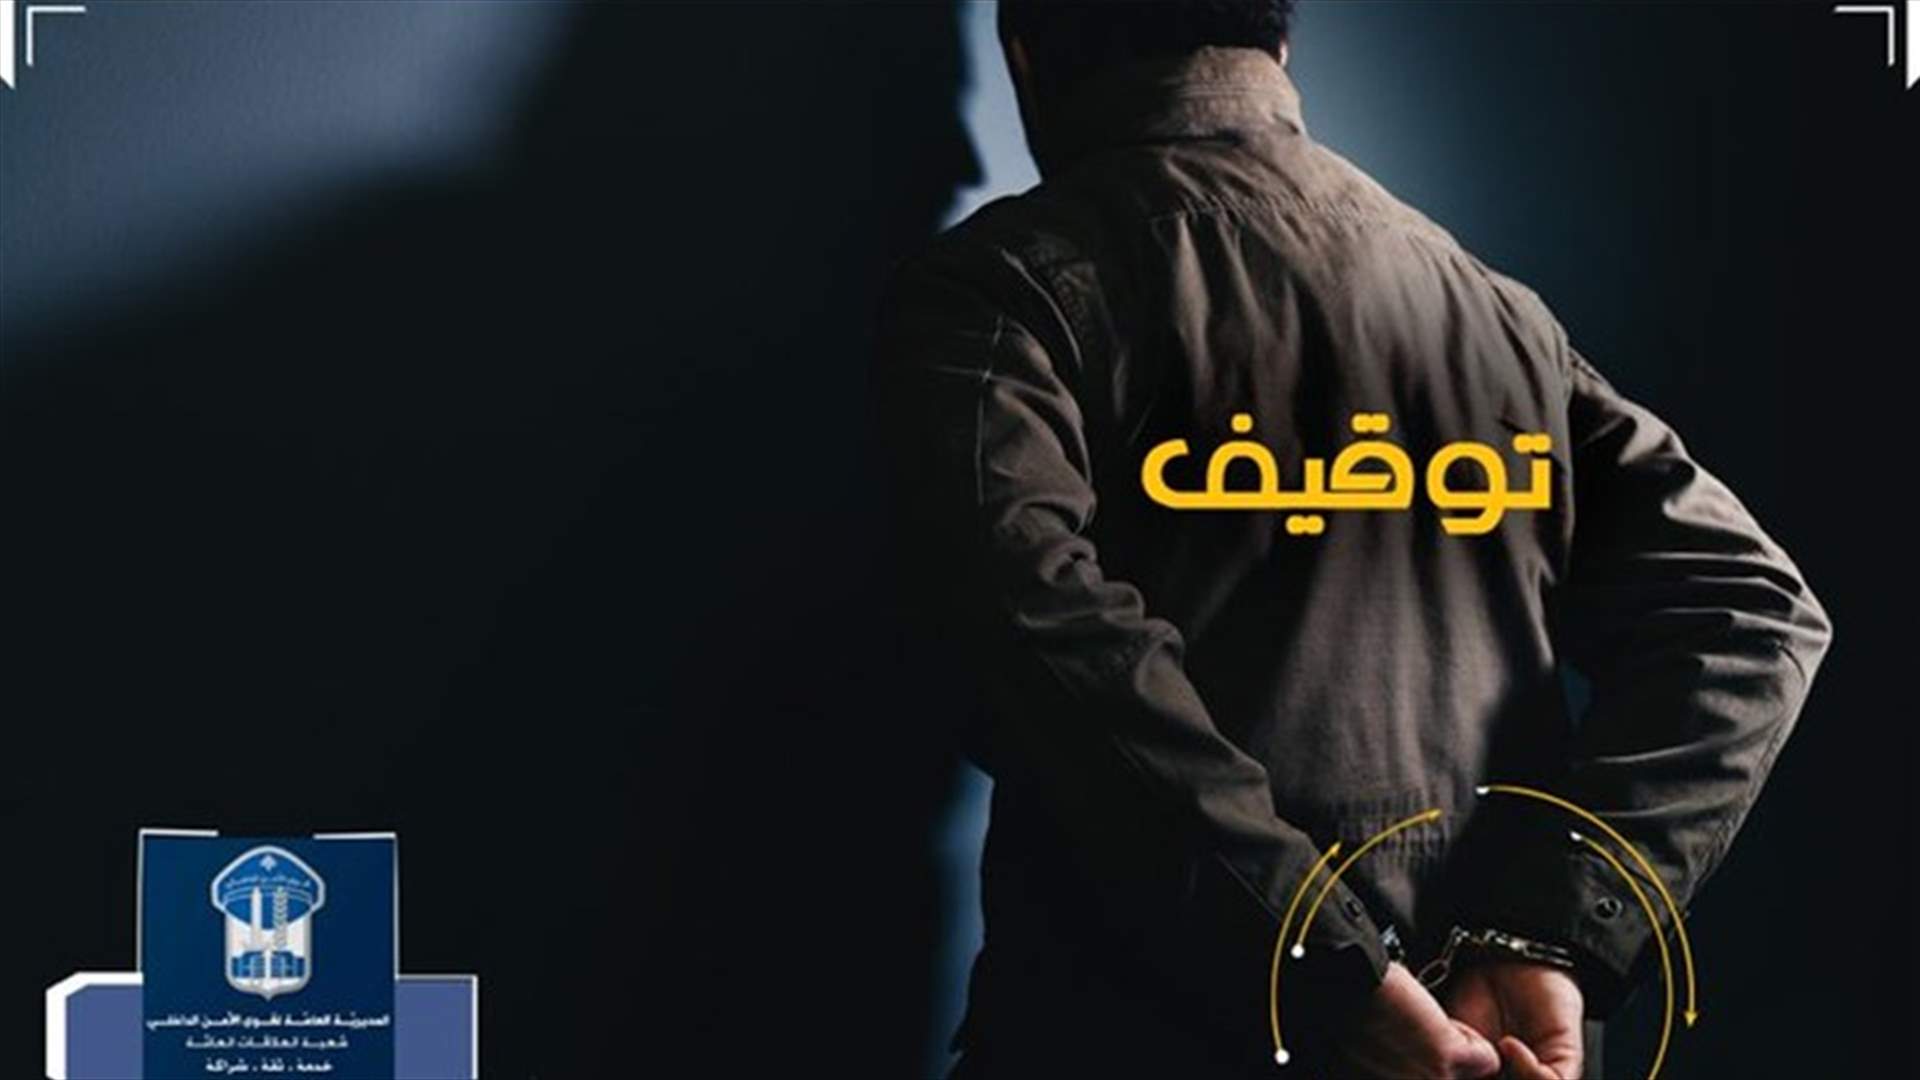 جبريل المصري أحد أخطر المطلوبين في قبضة قوى الأمن